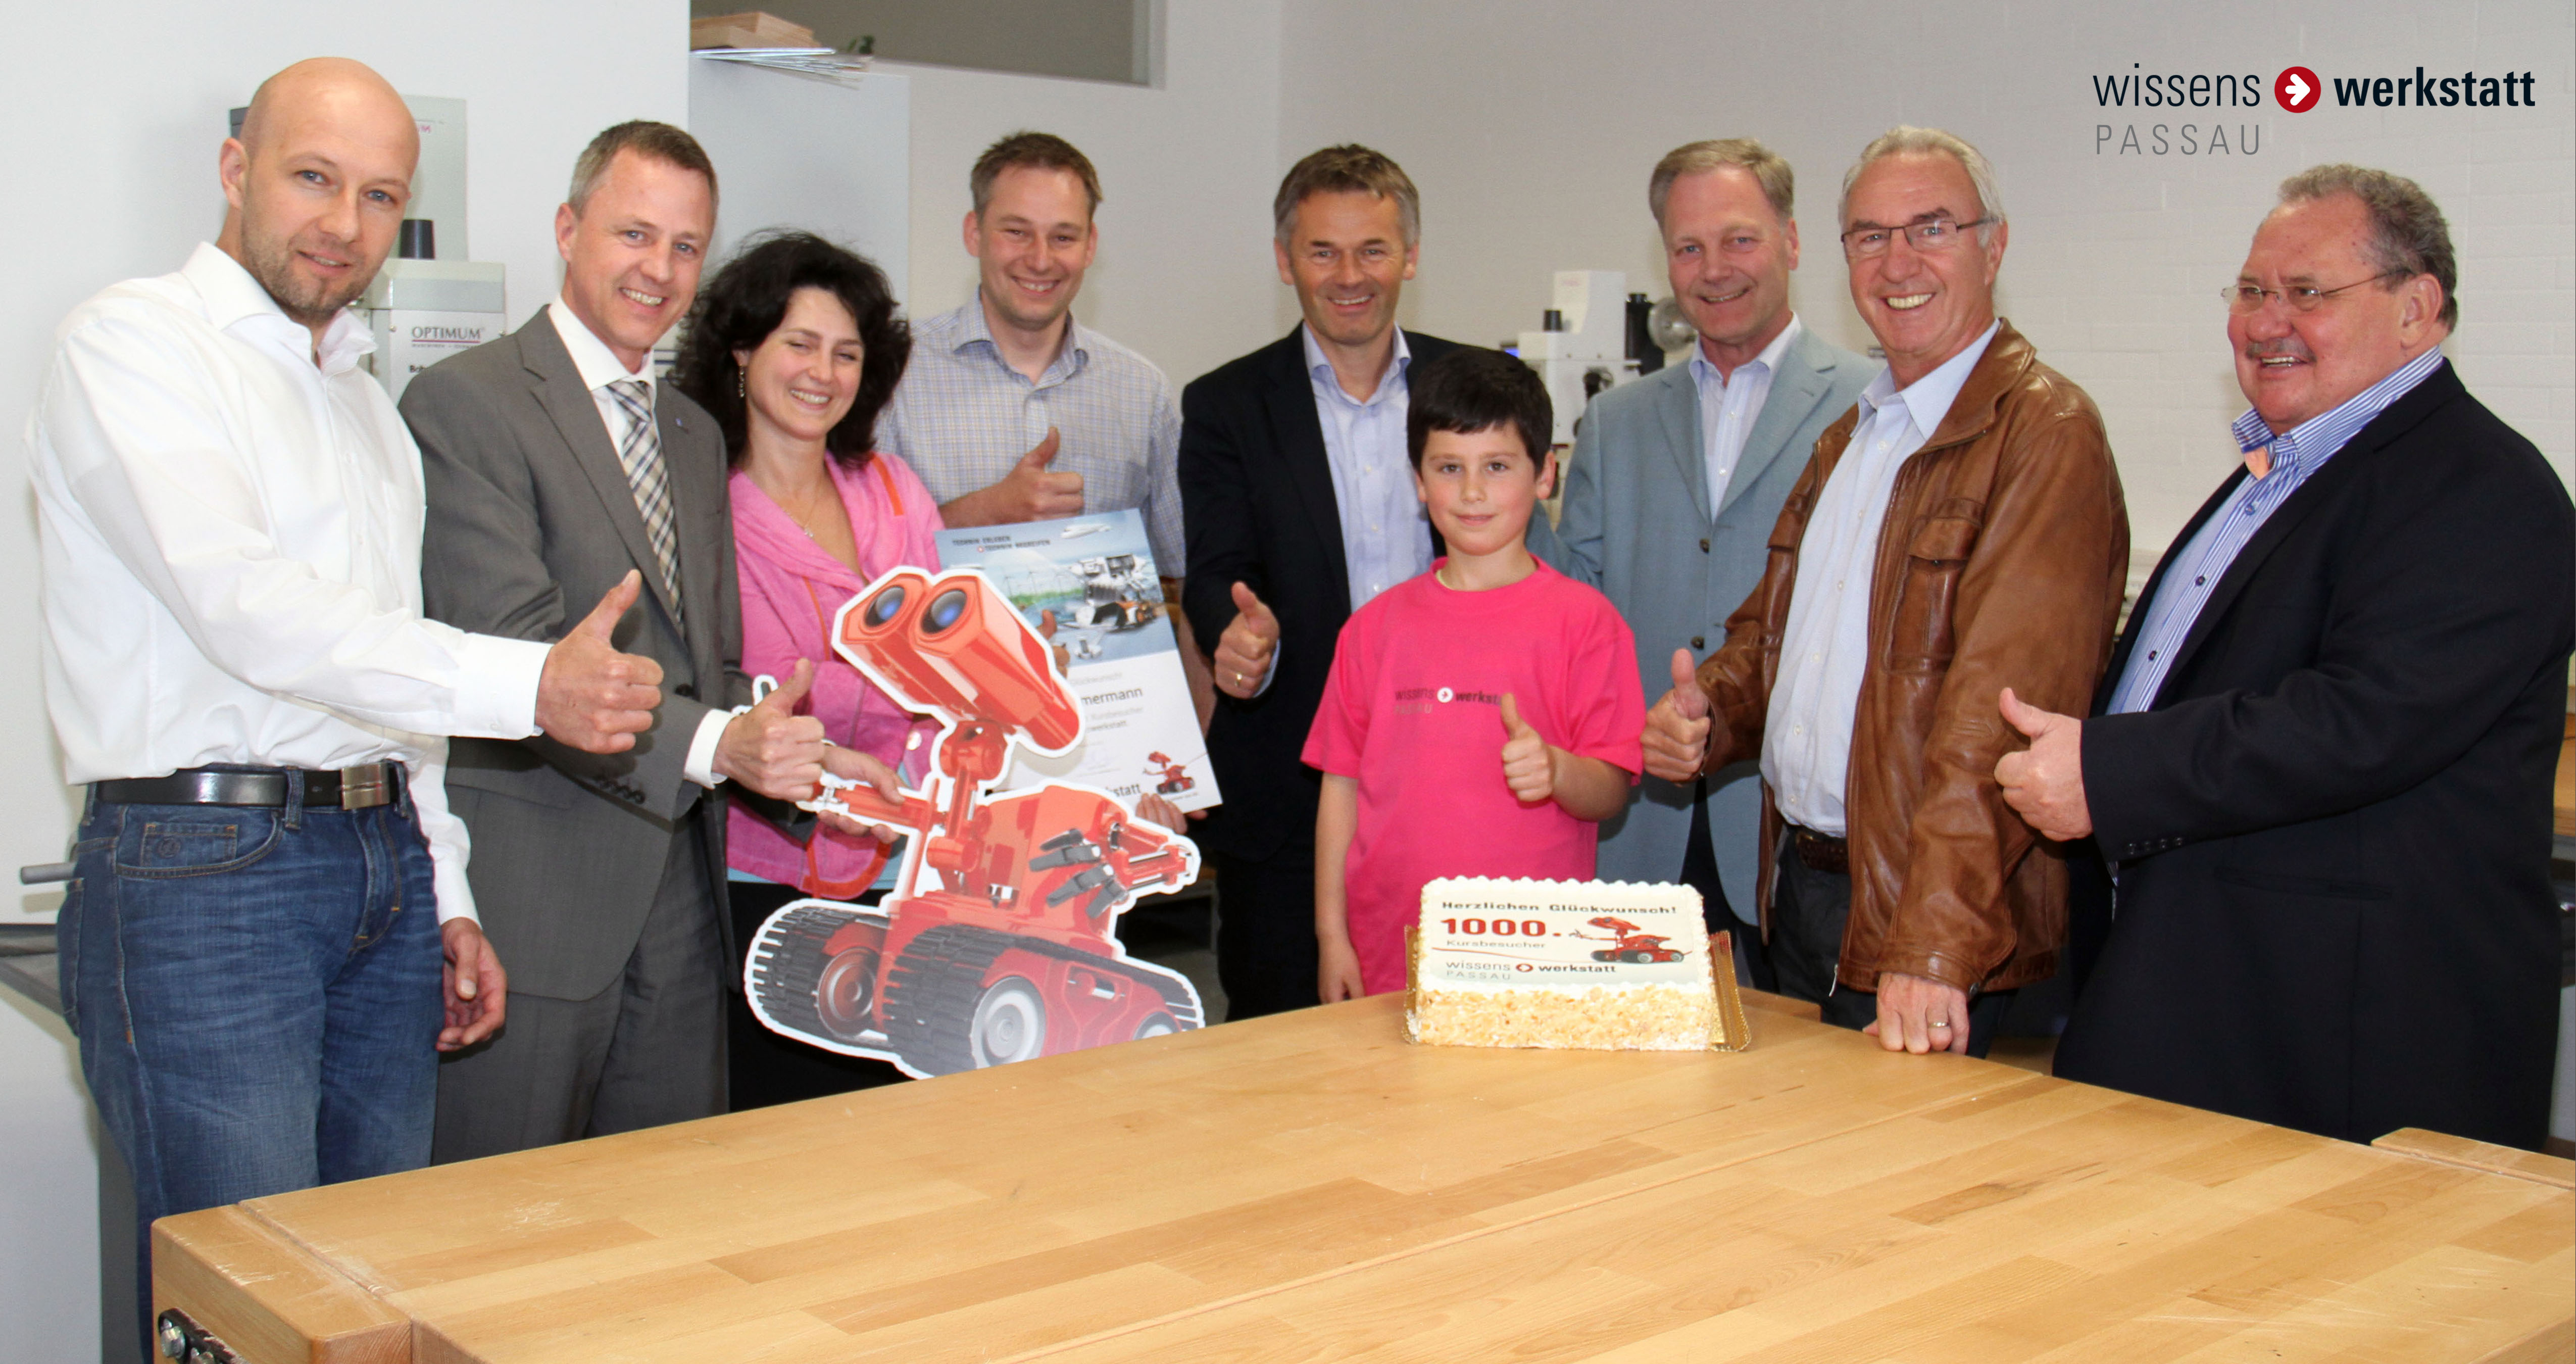 Die Passauer Wissenswerkstatt begrüßt ihren 1000 Besucher